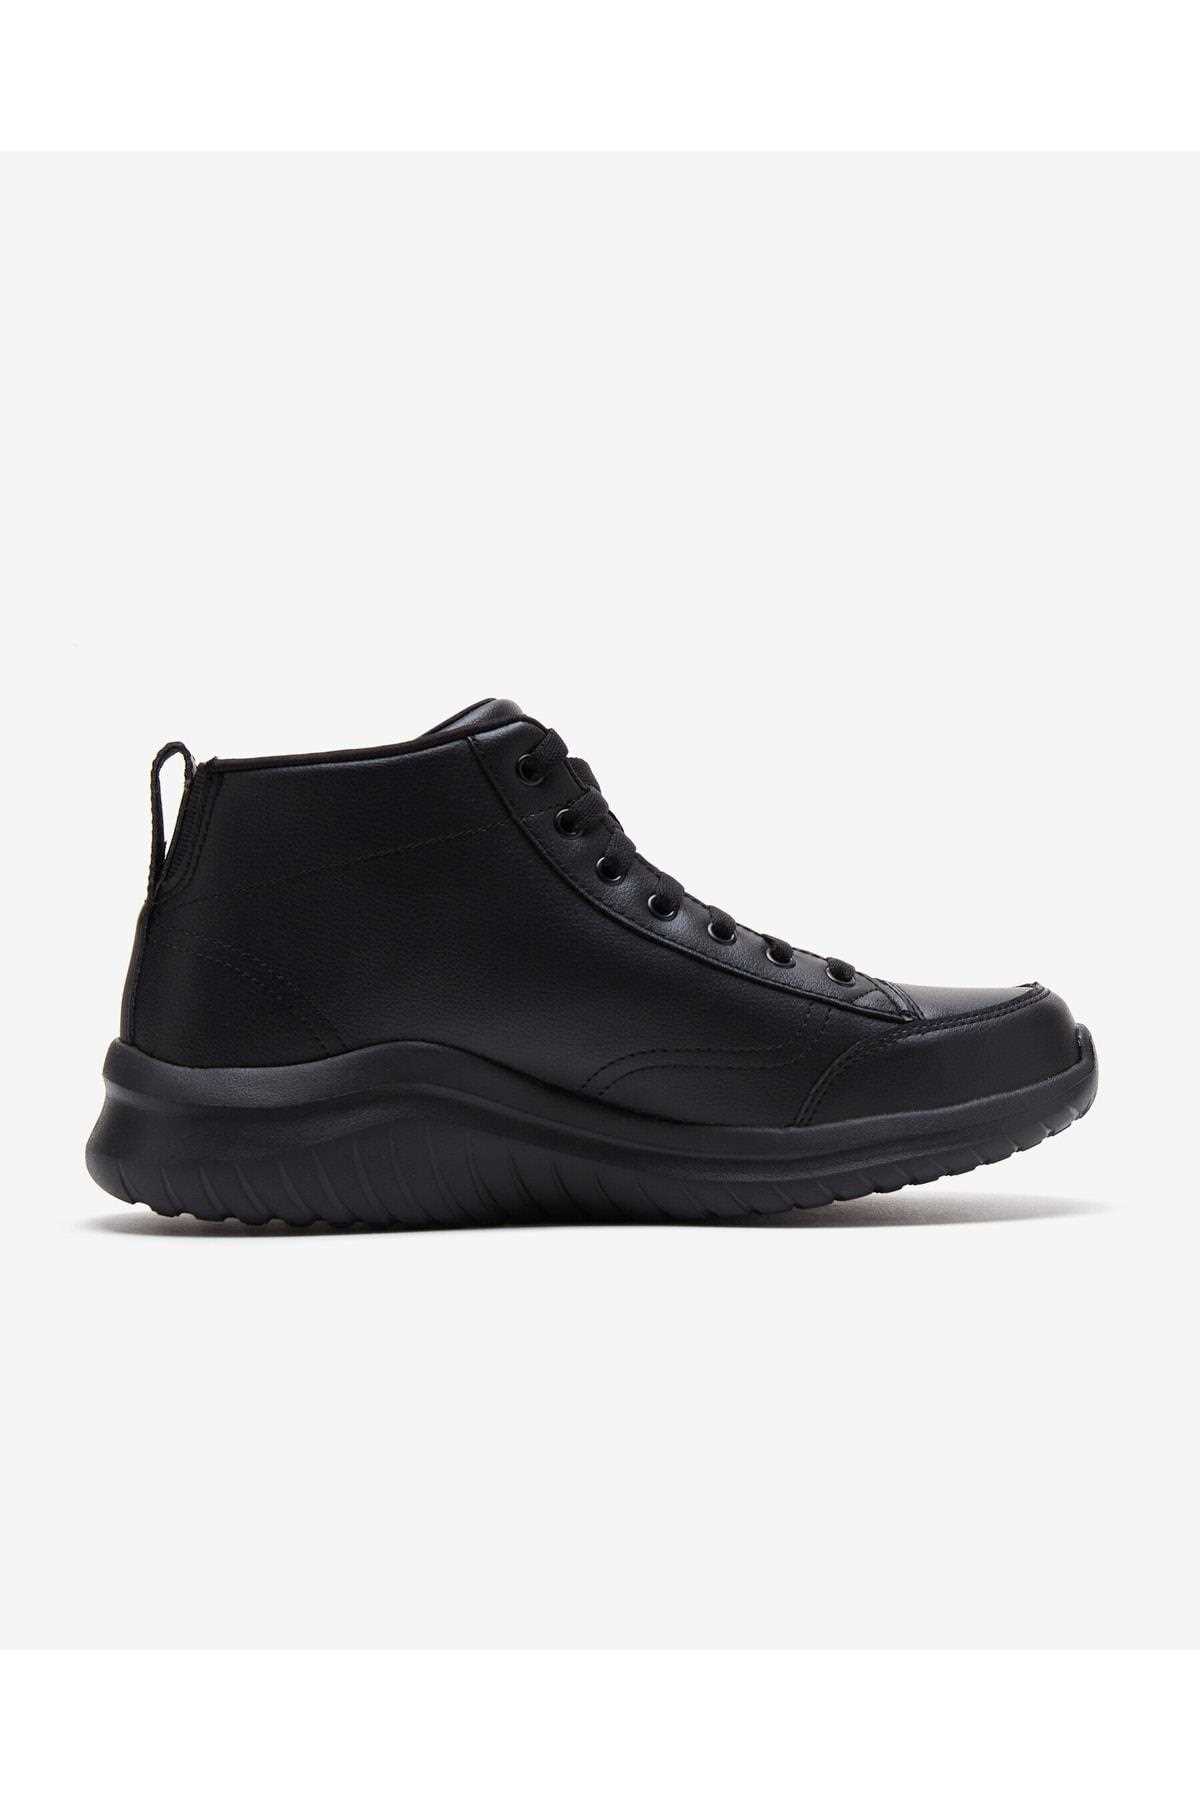 فروش نقدی کفش مخصوص پیاده روی مردانه خاص برند اسکیچرز رنگ مشکی کد ty411910091